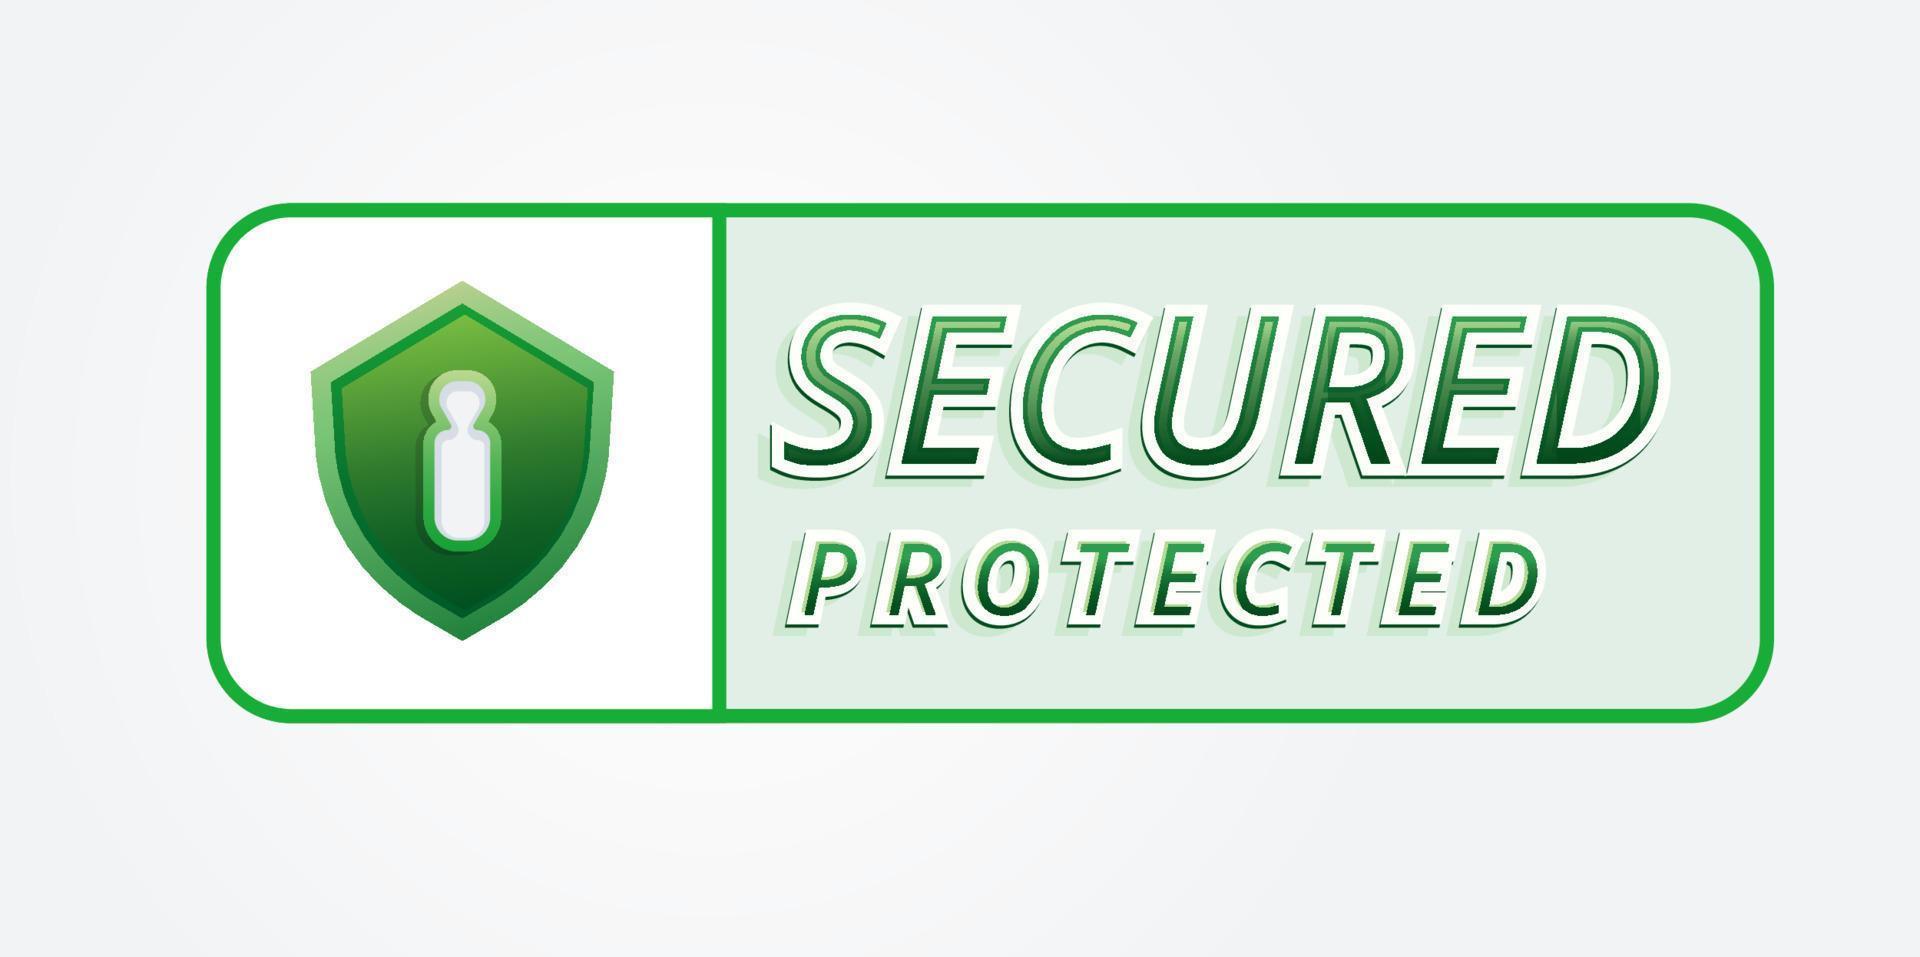 grön säkrad verified logotyp skydda med checklista låsa och stjärna isolerat bricka illustration vektor